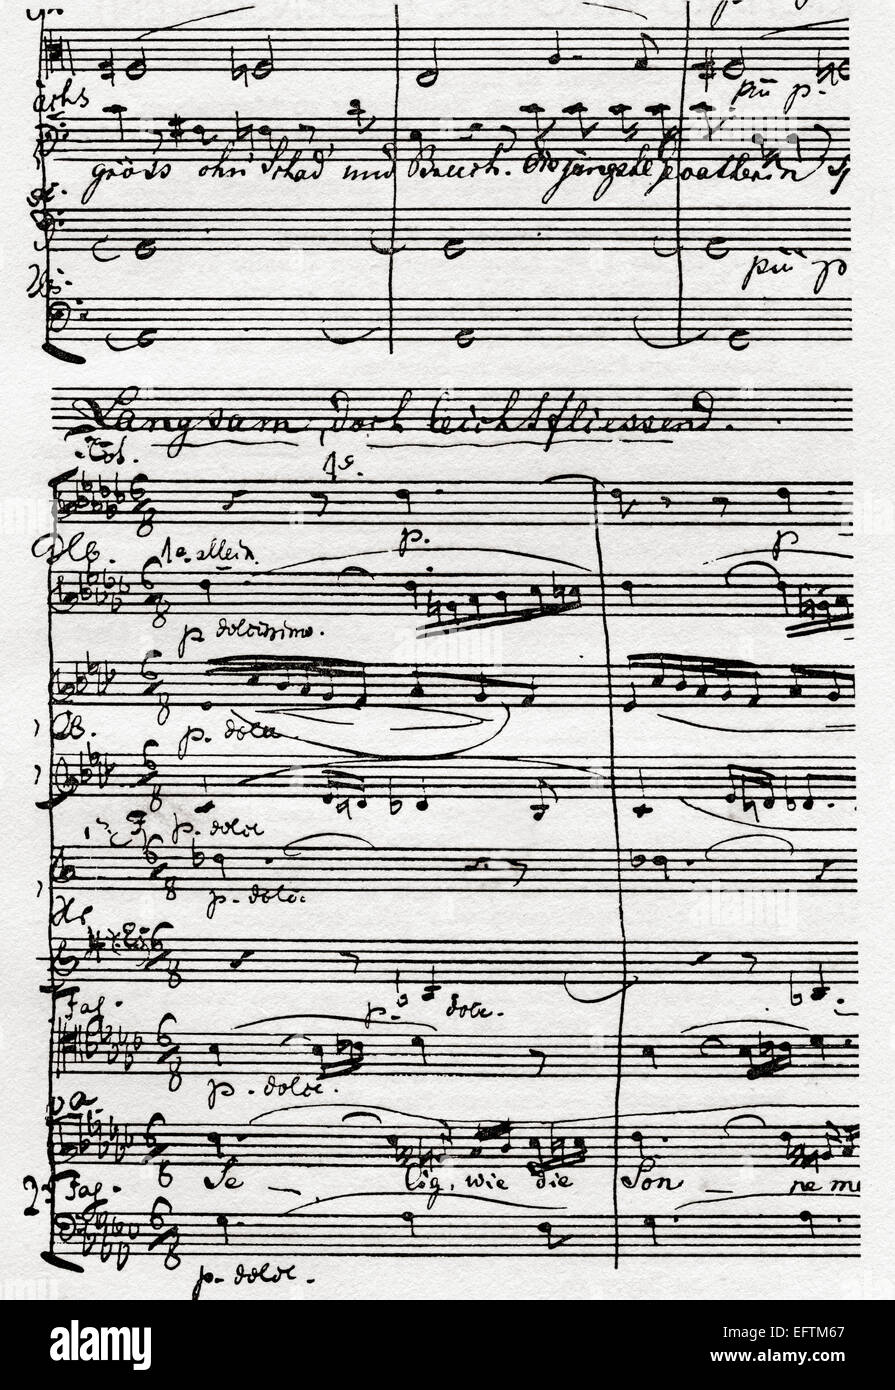 Parte della partitura musicale di Die Meistersinger von Nürnberg, 'l'Master-Singers di Norimberga". Dramma musicale o di opera lirica in tre atti, scritto e composto da Richard Wagner. Foto Stock